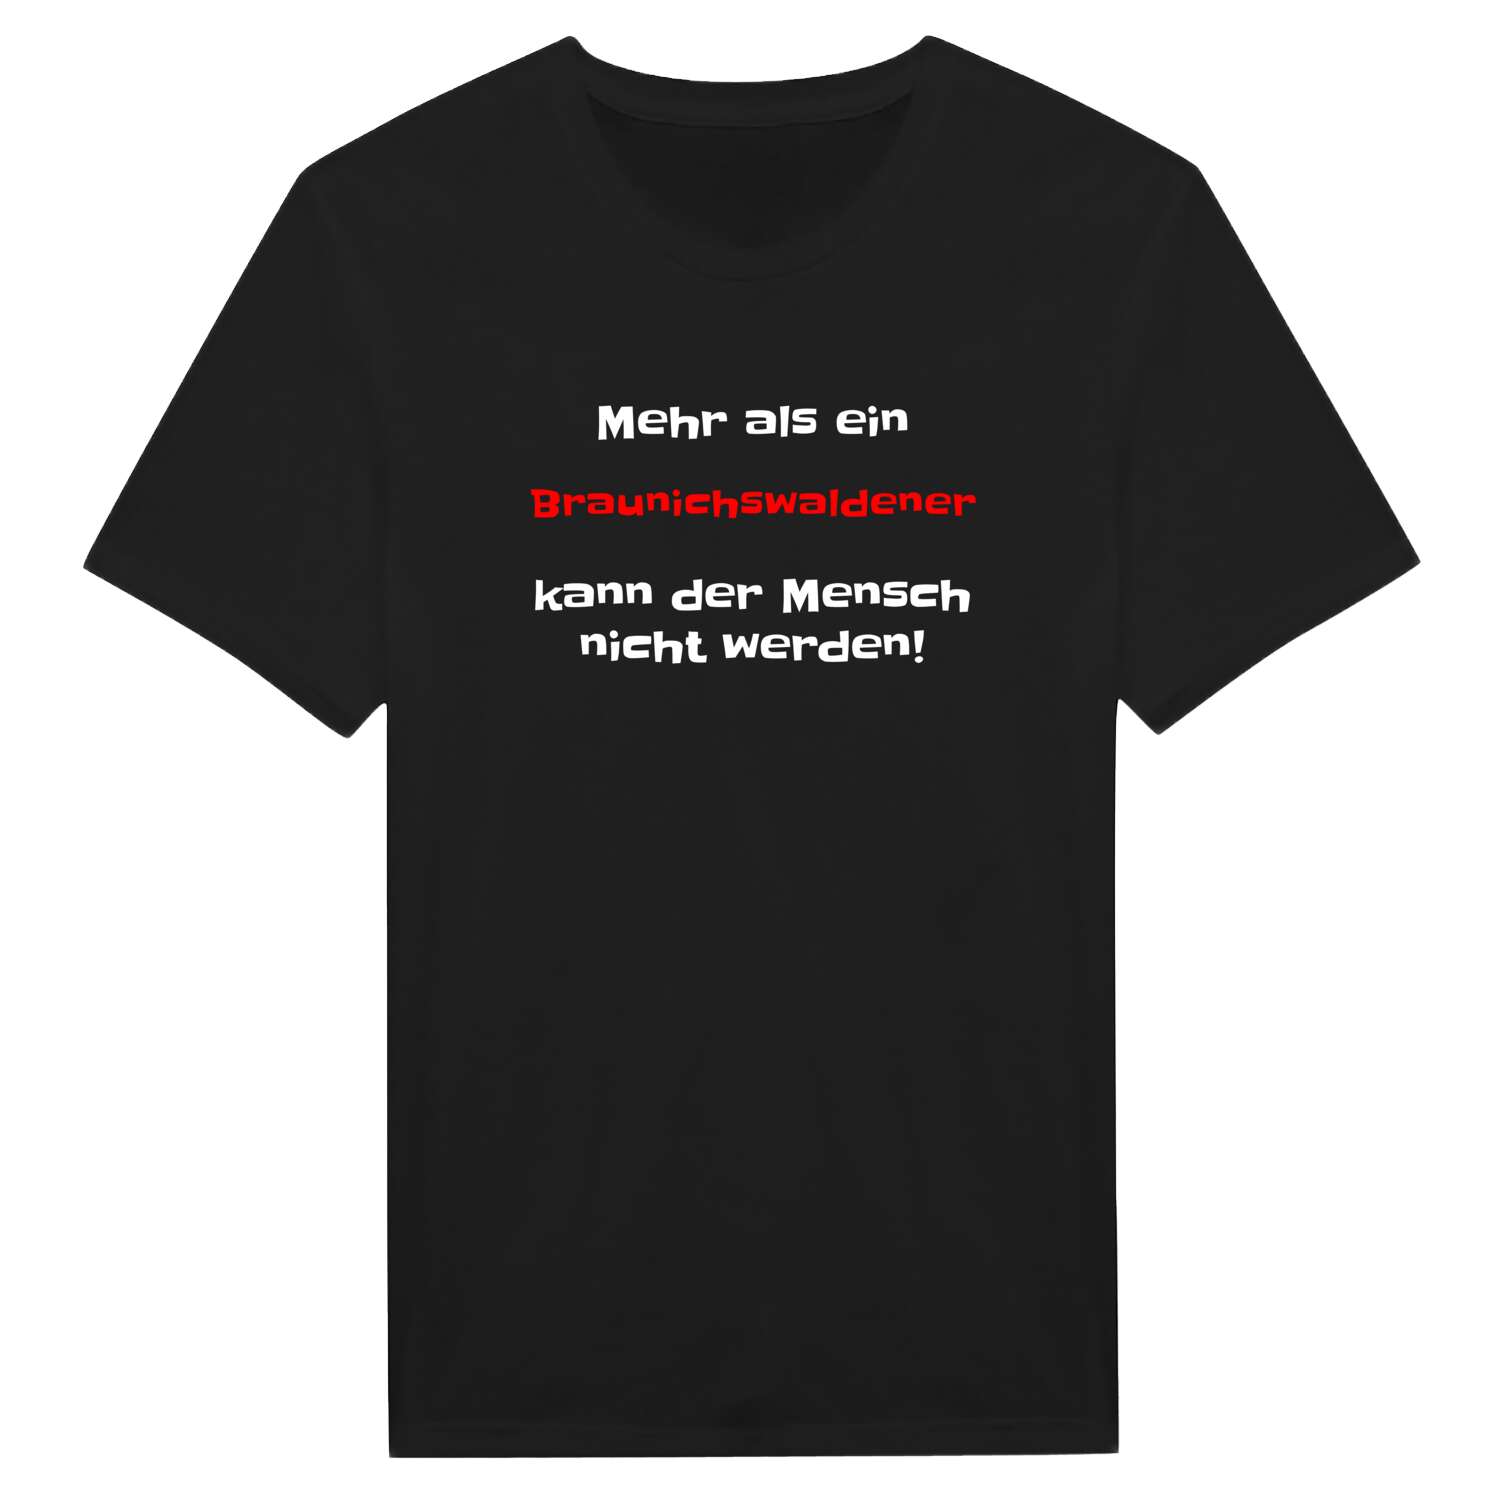 Braunichswalde T-Shirt »Mehr als ein«